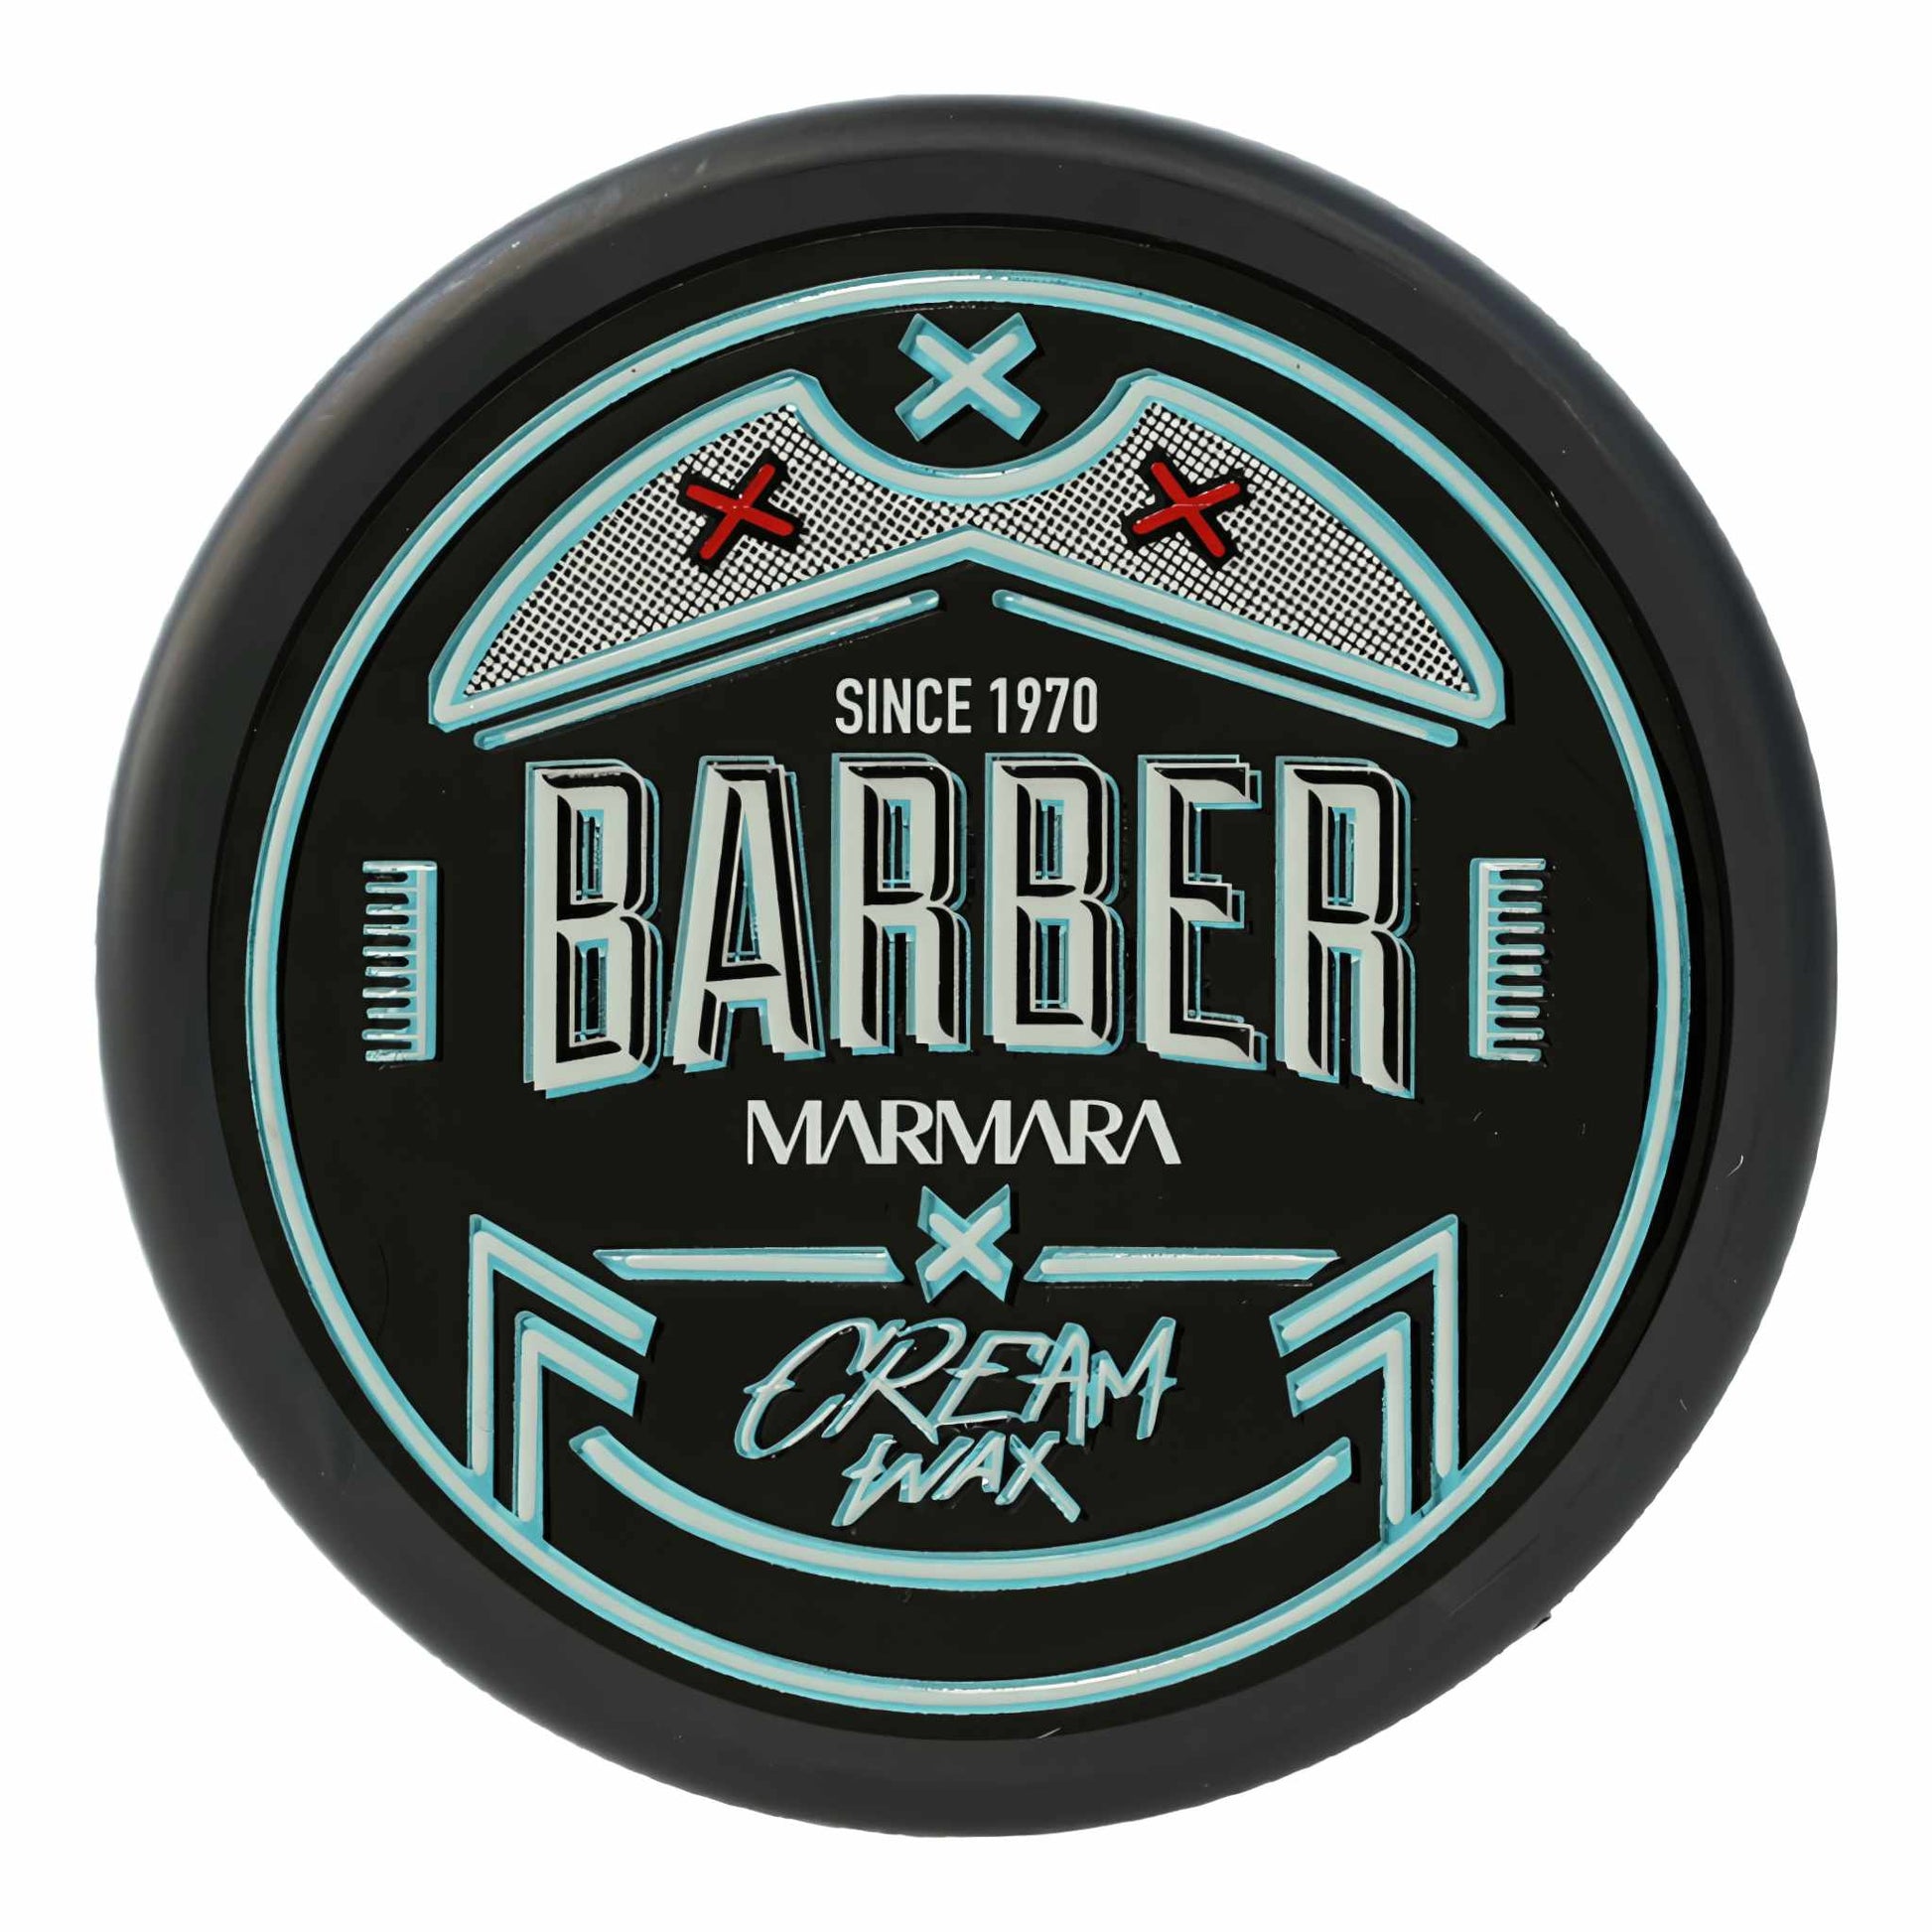 Marmara Cream Wax Barber 150 ml